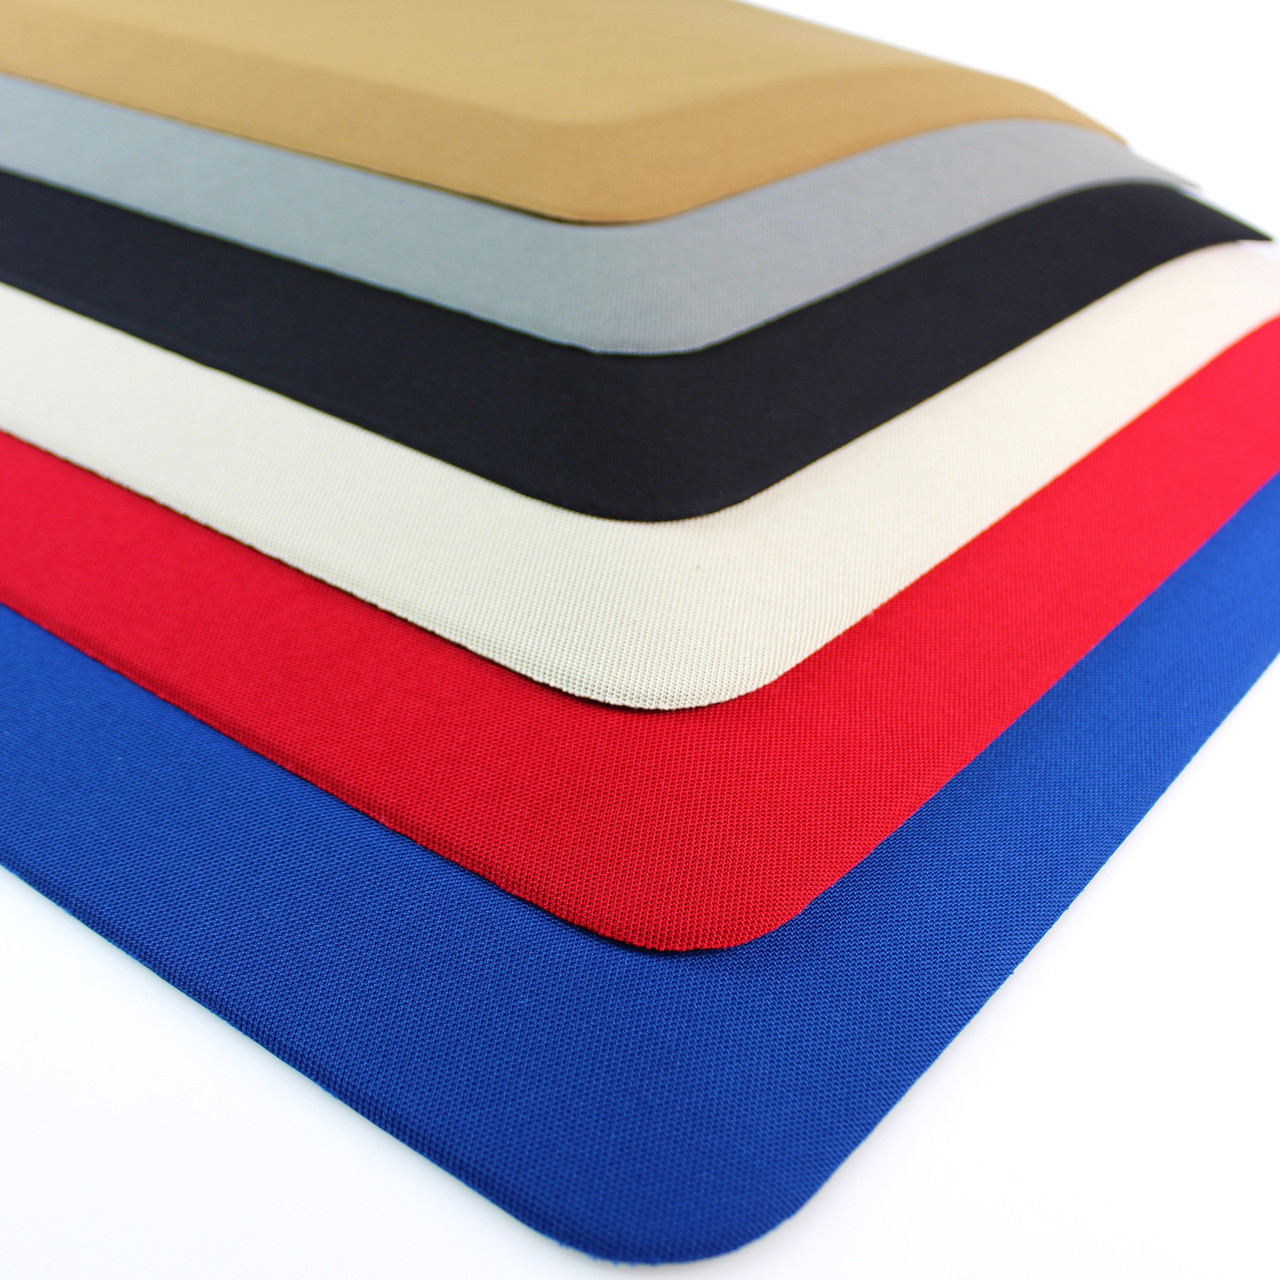 Ultralux Premium Anti-Fatigue Floor Comfort Mat | Durable Ergonomic Multi-Purpose Non-Slip Standing Support Mat | 3/4 Thick | Blue